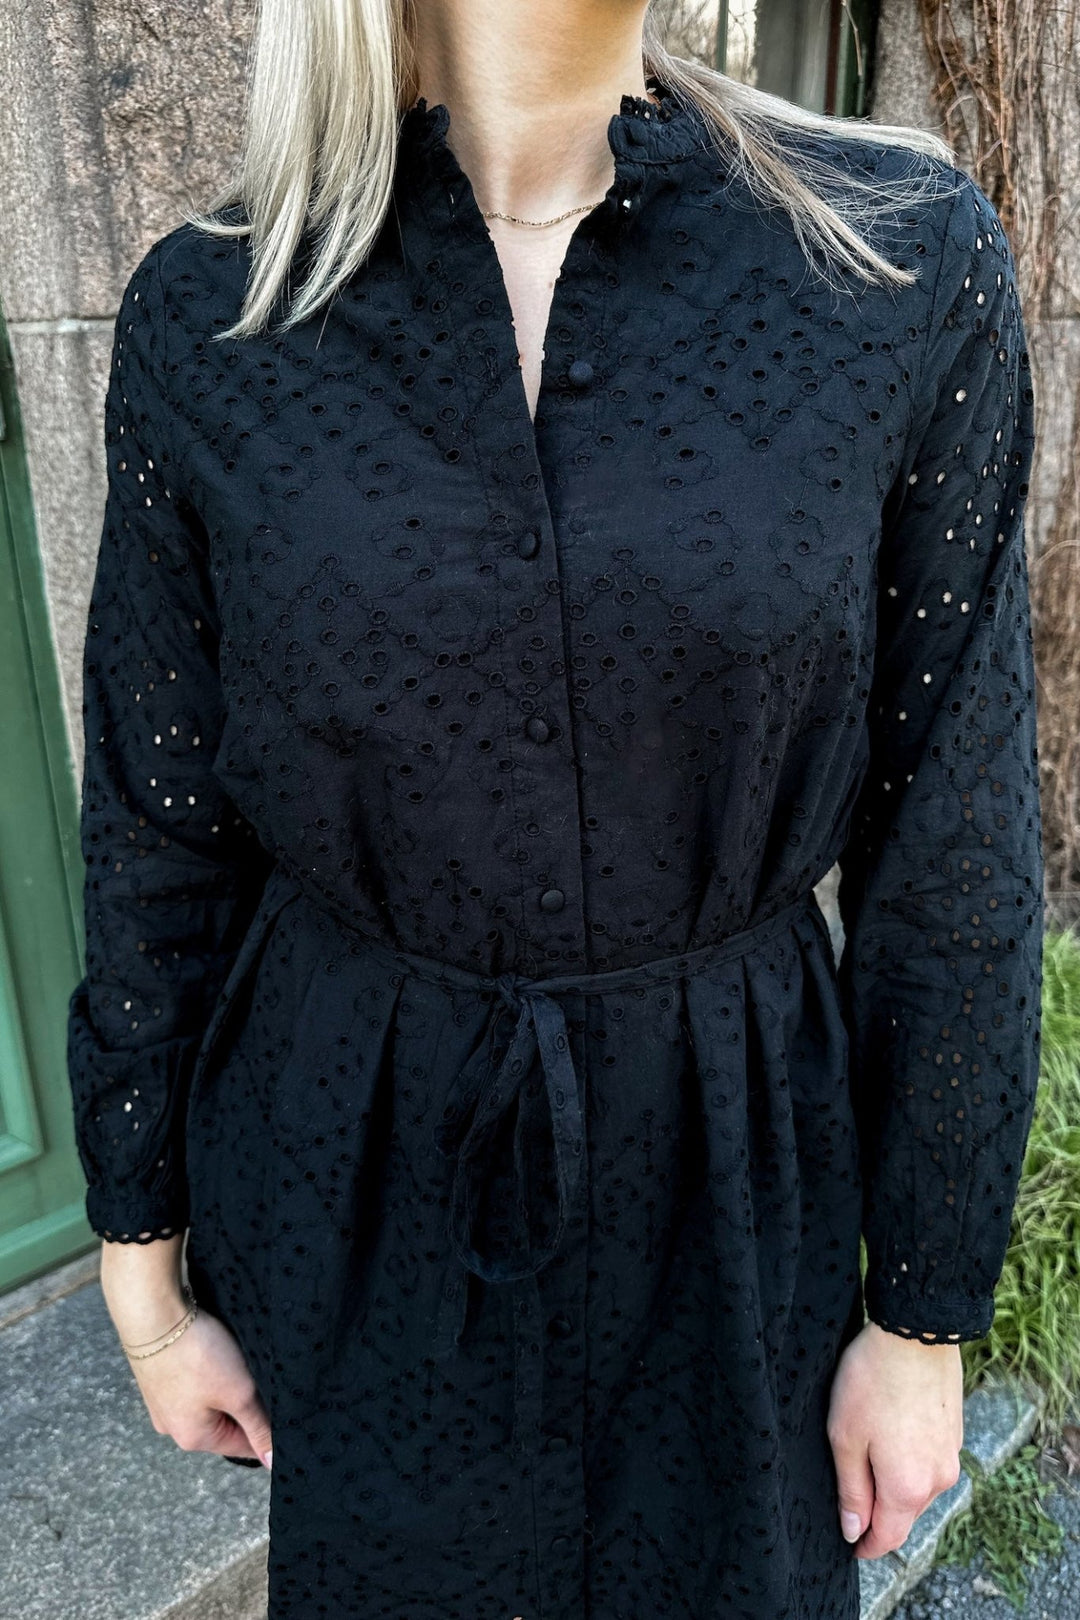 Tatiana Ls Short Embr Dress Black | Kjoler | Smuk - Dameklær på nett